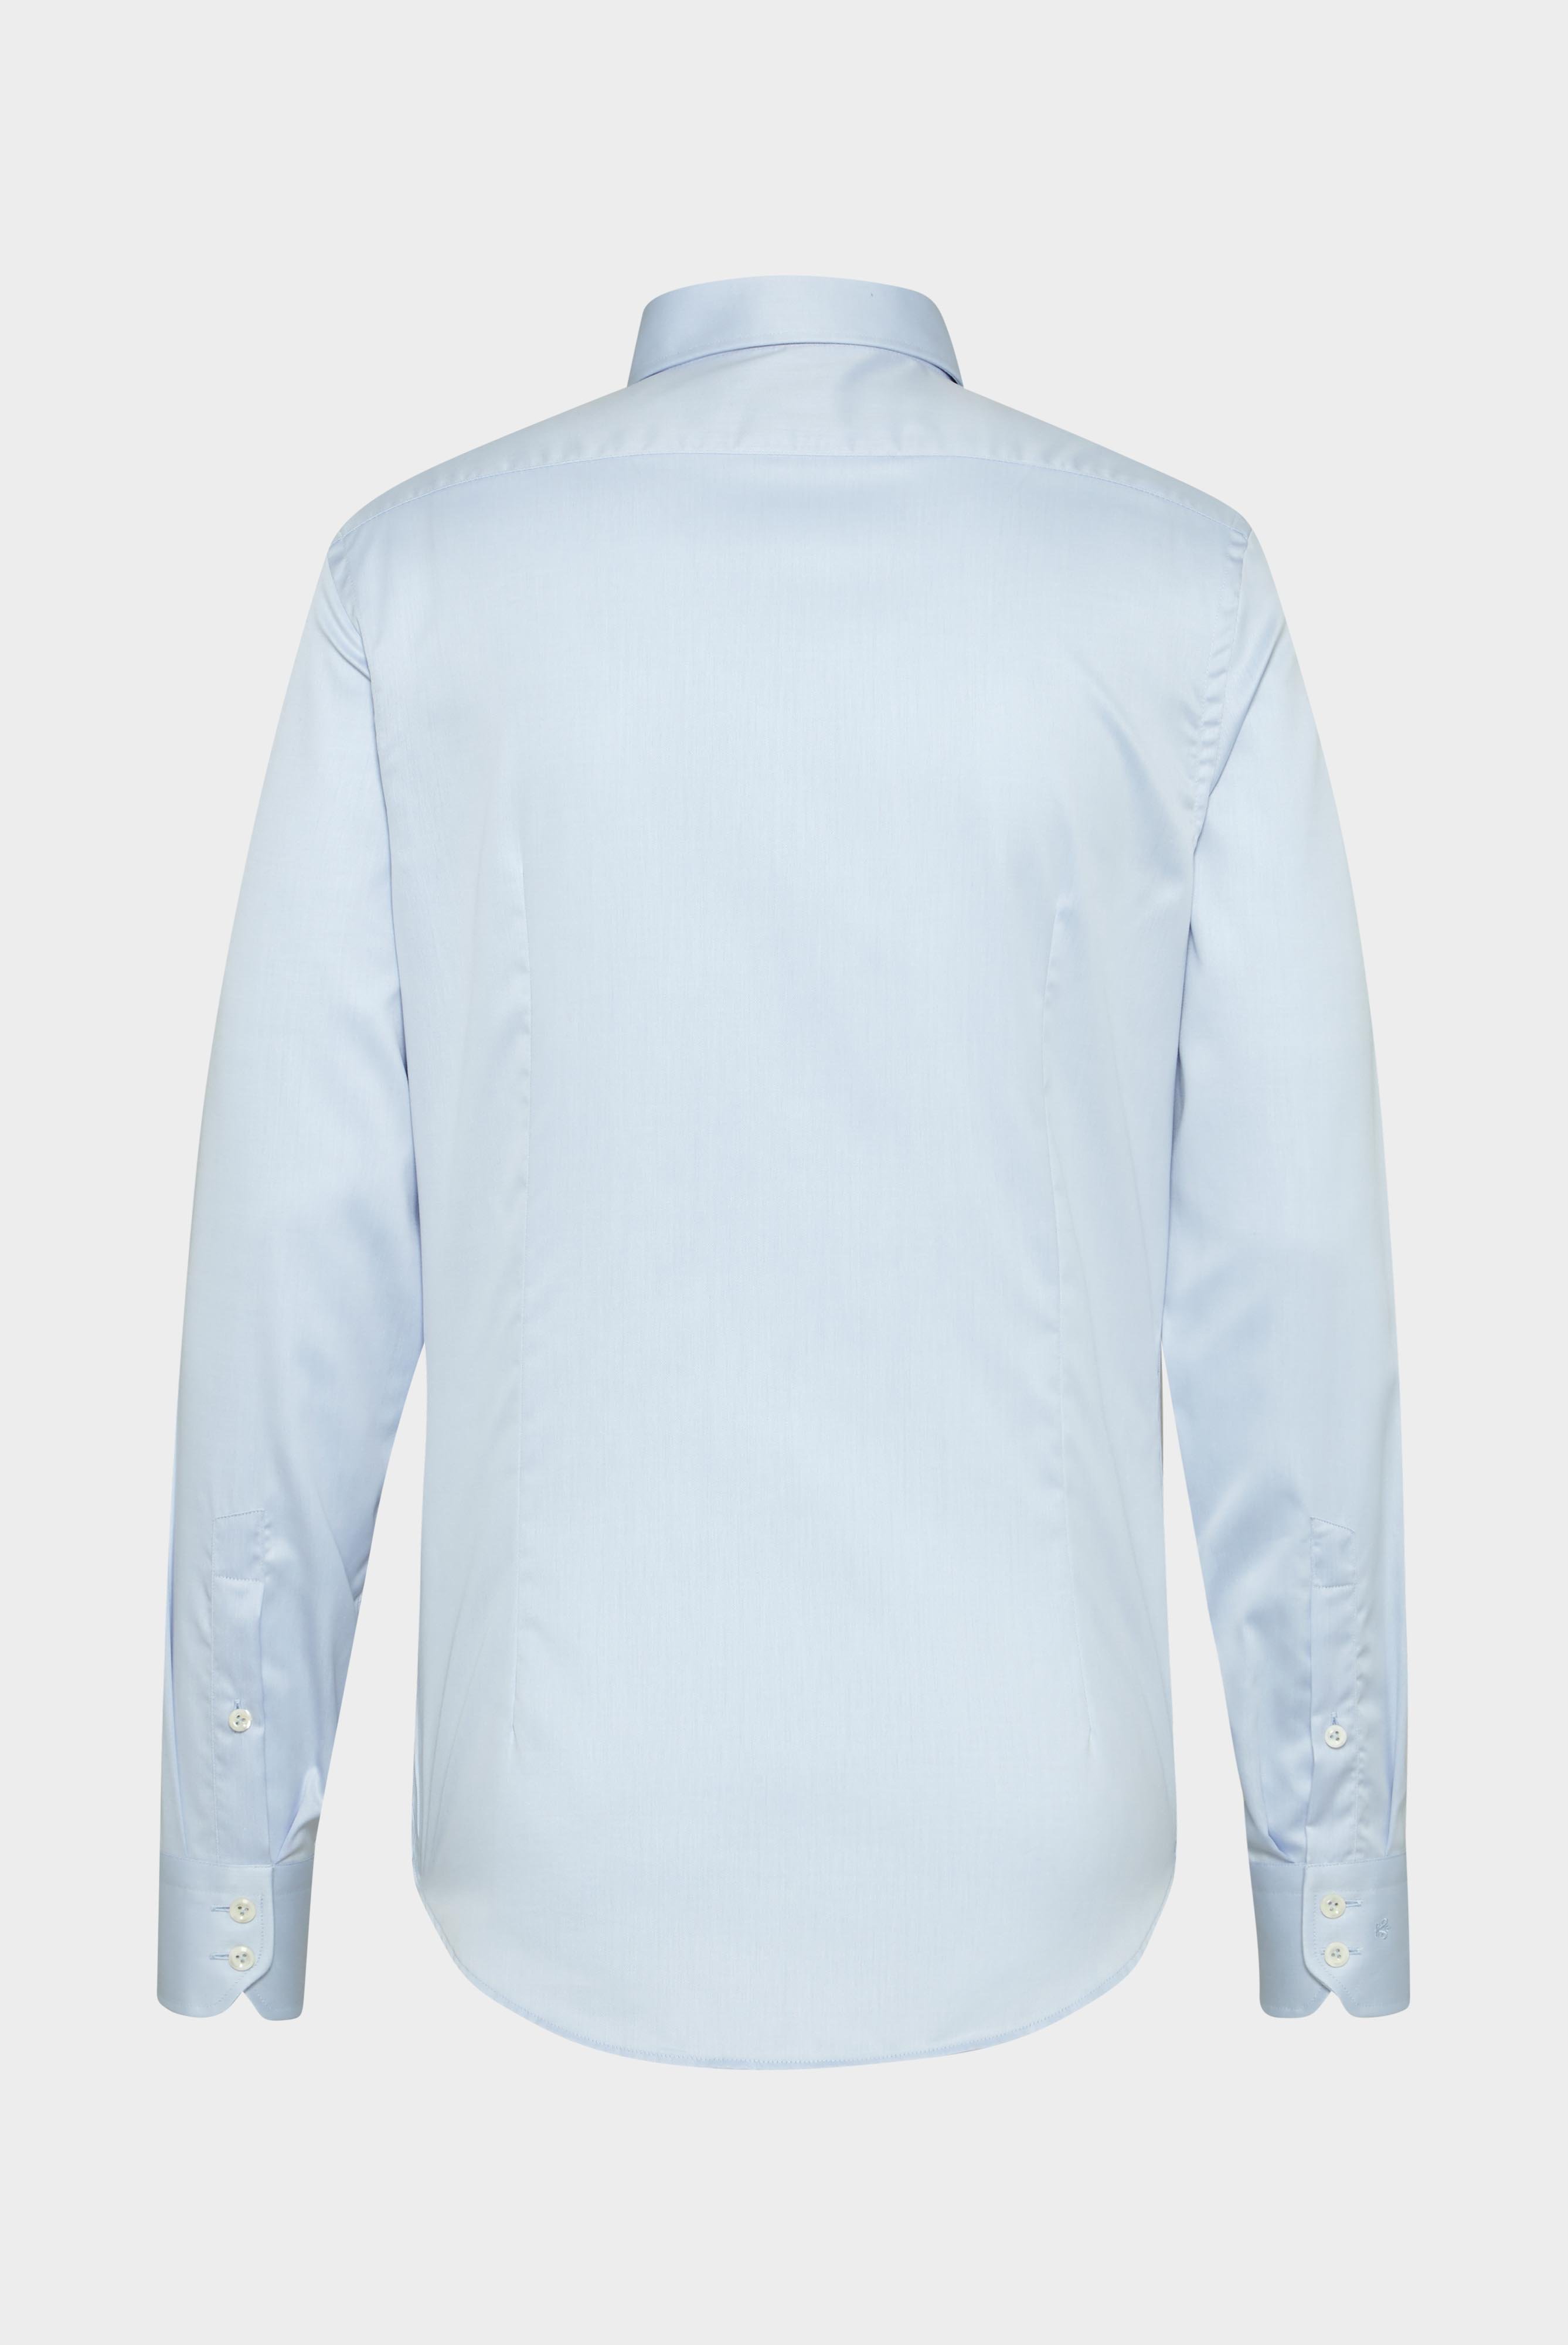 Bügelleichte Hemden+Bügelfreies Twill Hemd Slim Fit+20.2019.BQ.132241.720.38